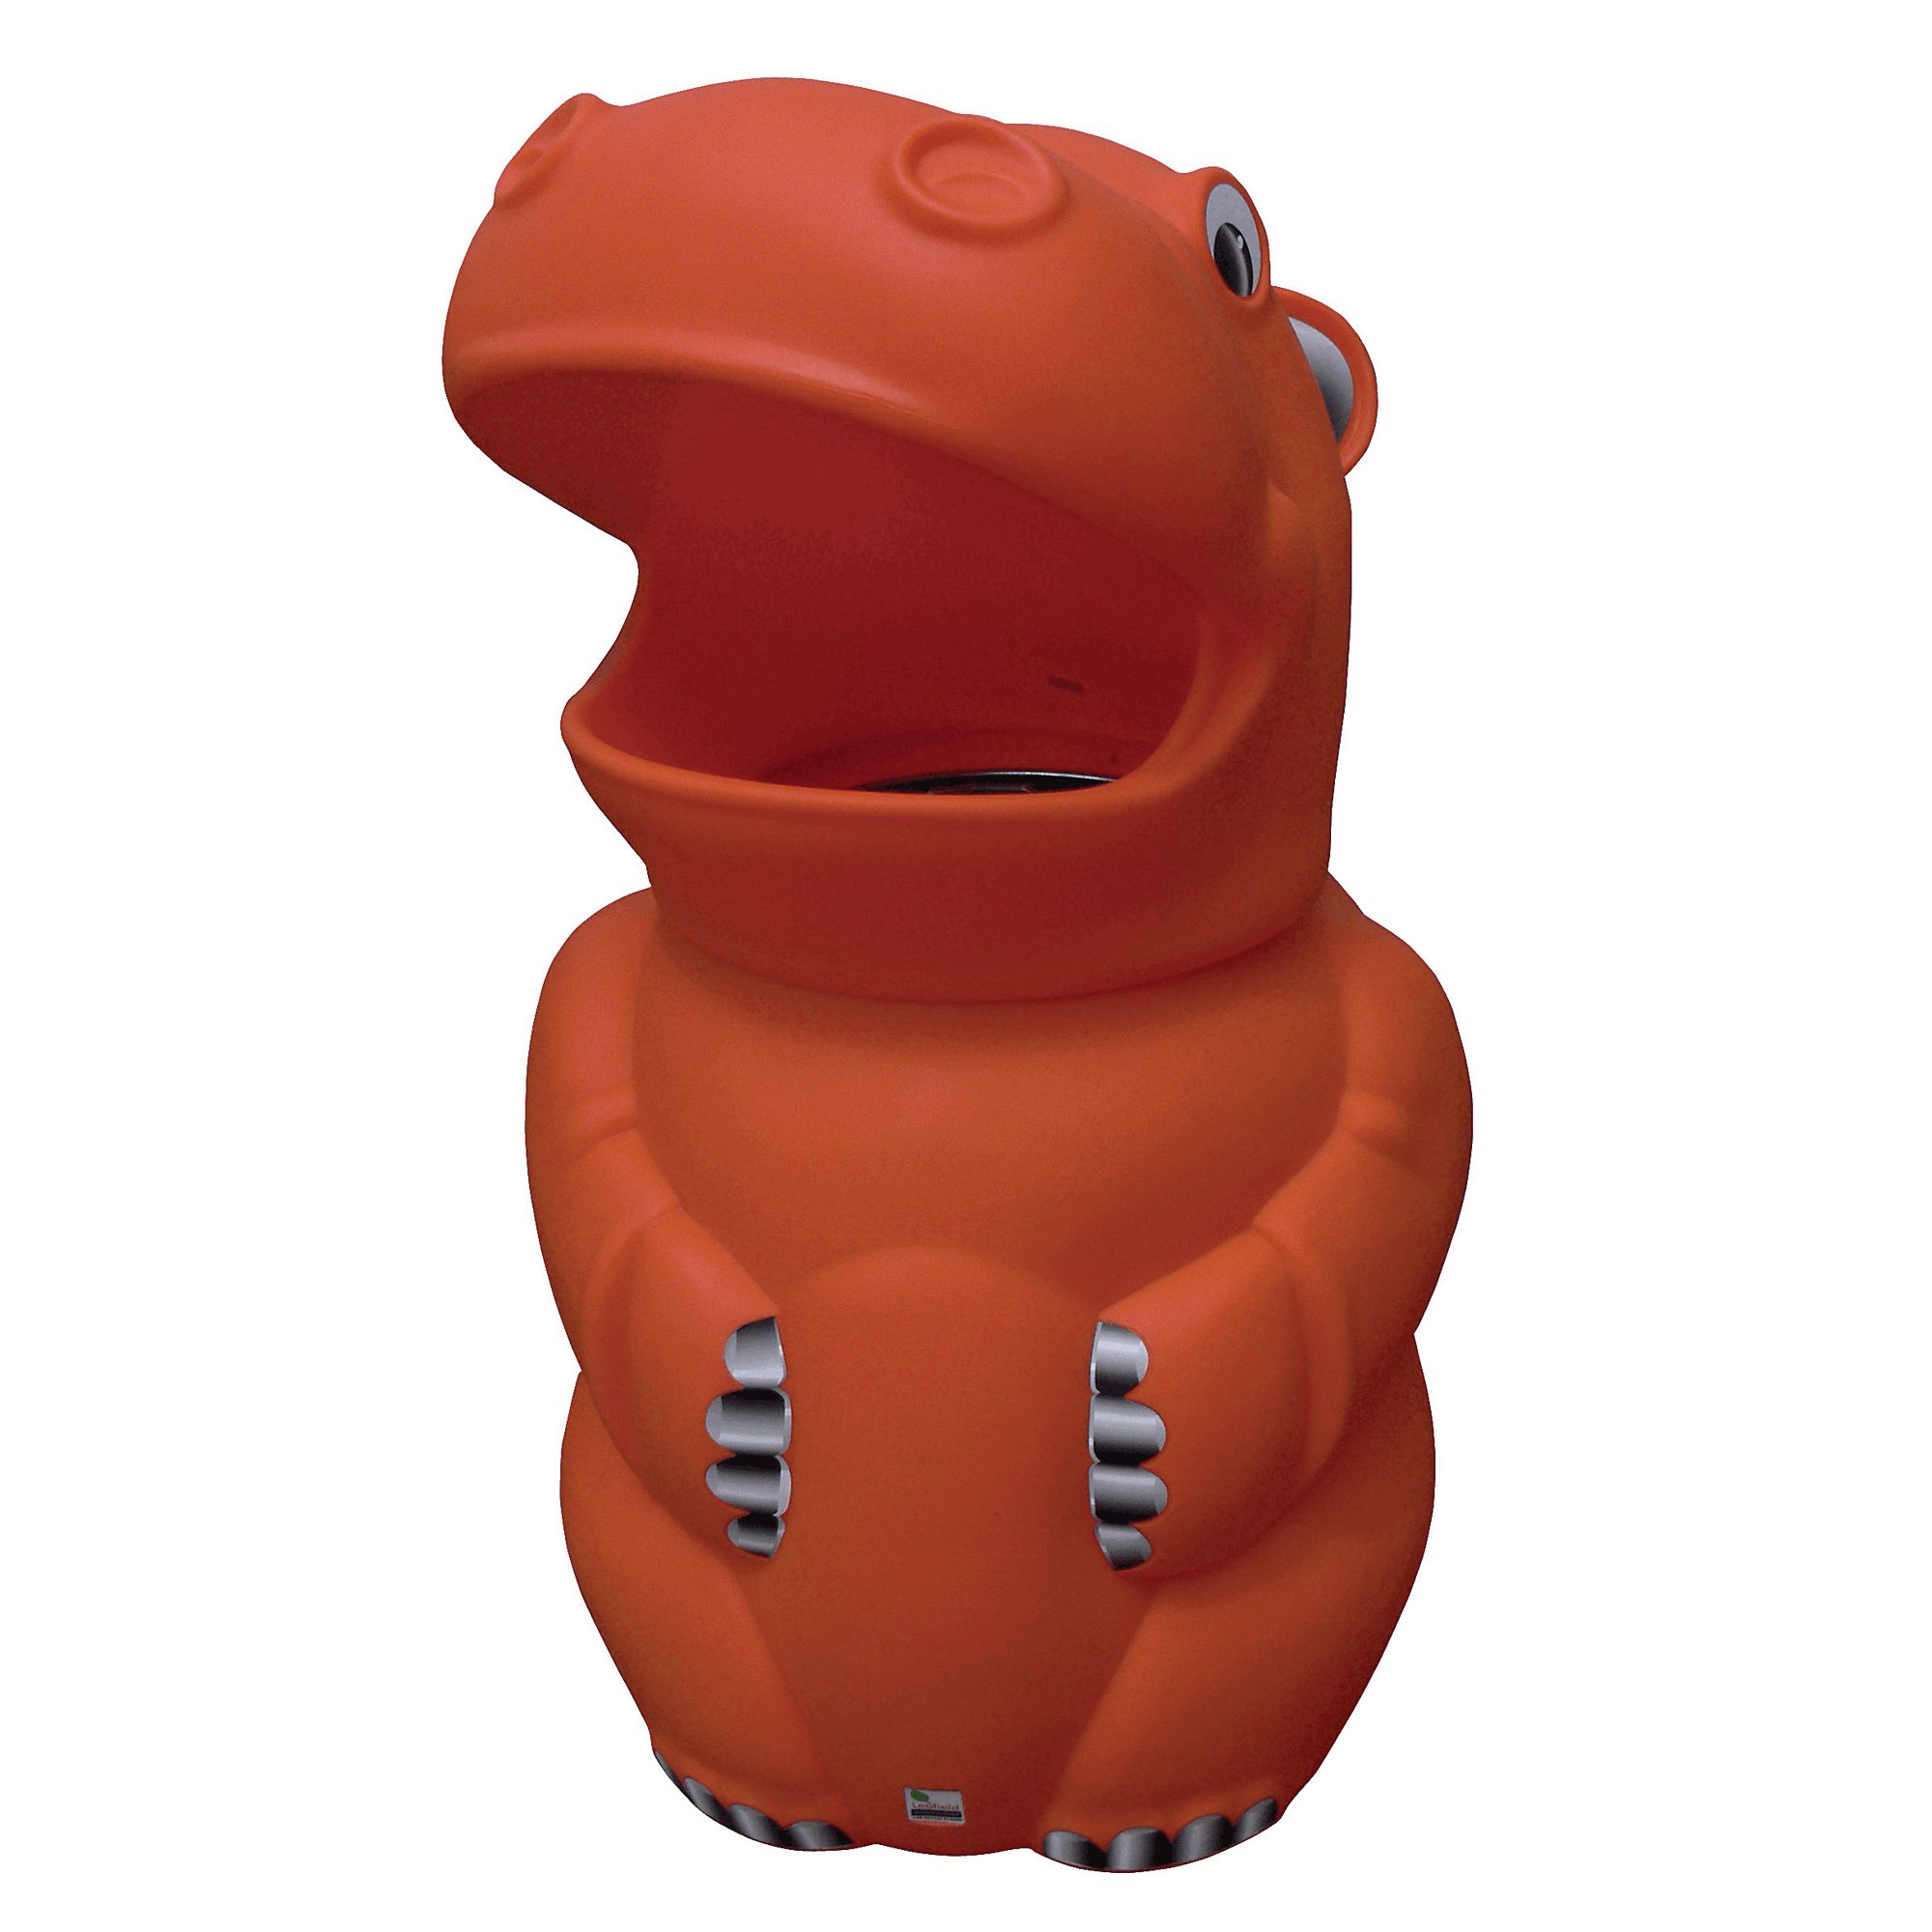 Hippo Bin H1100xDia 700mm Orange